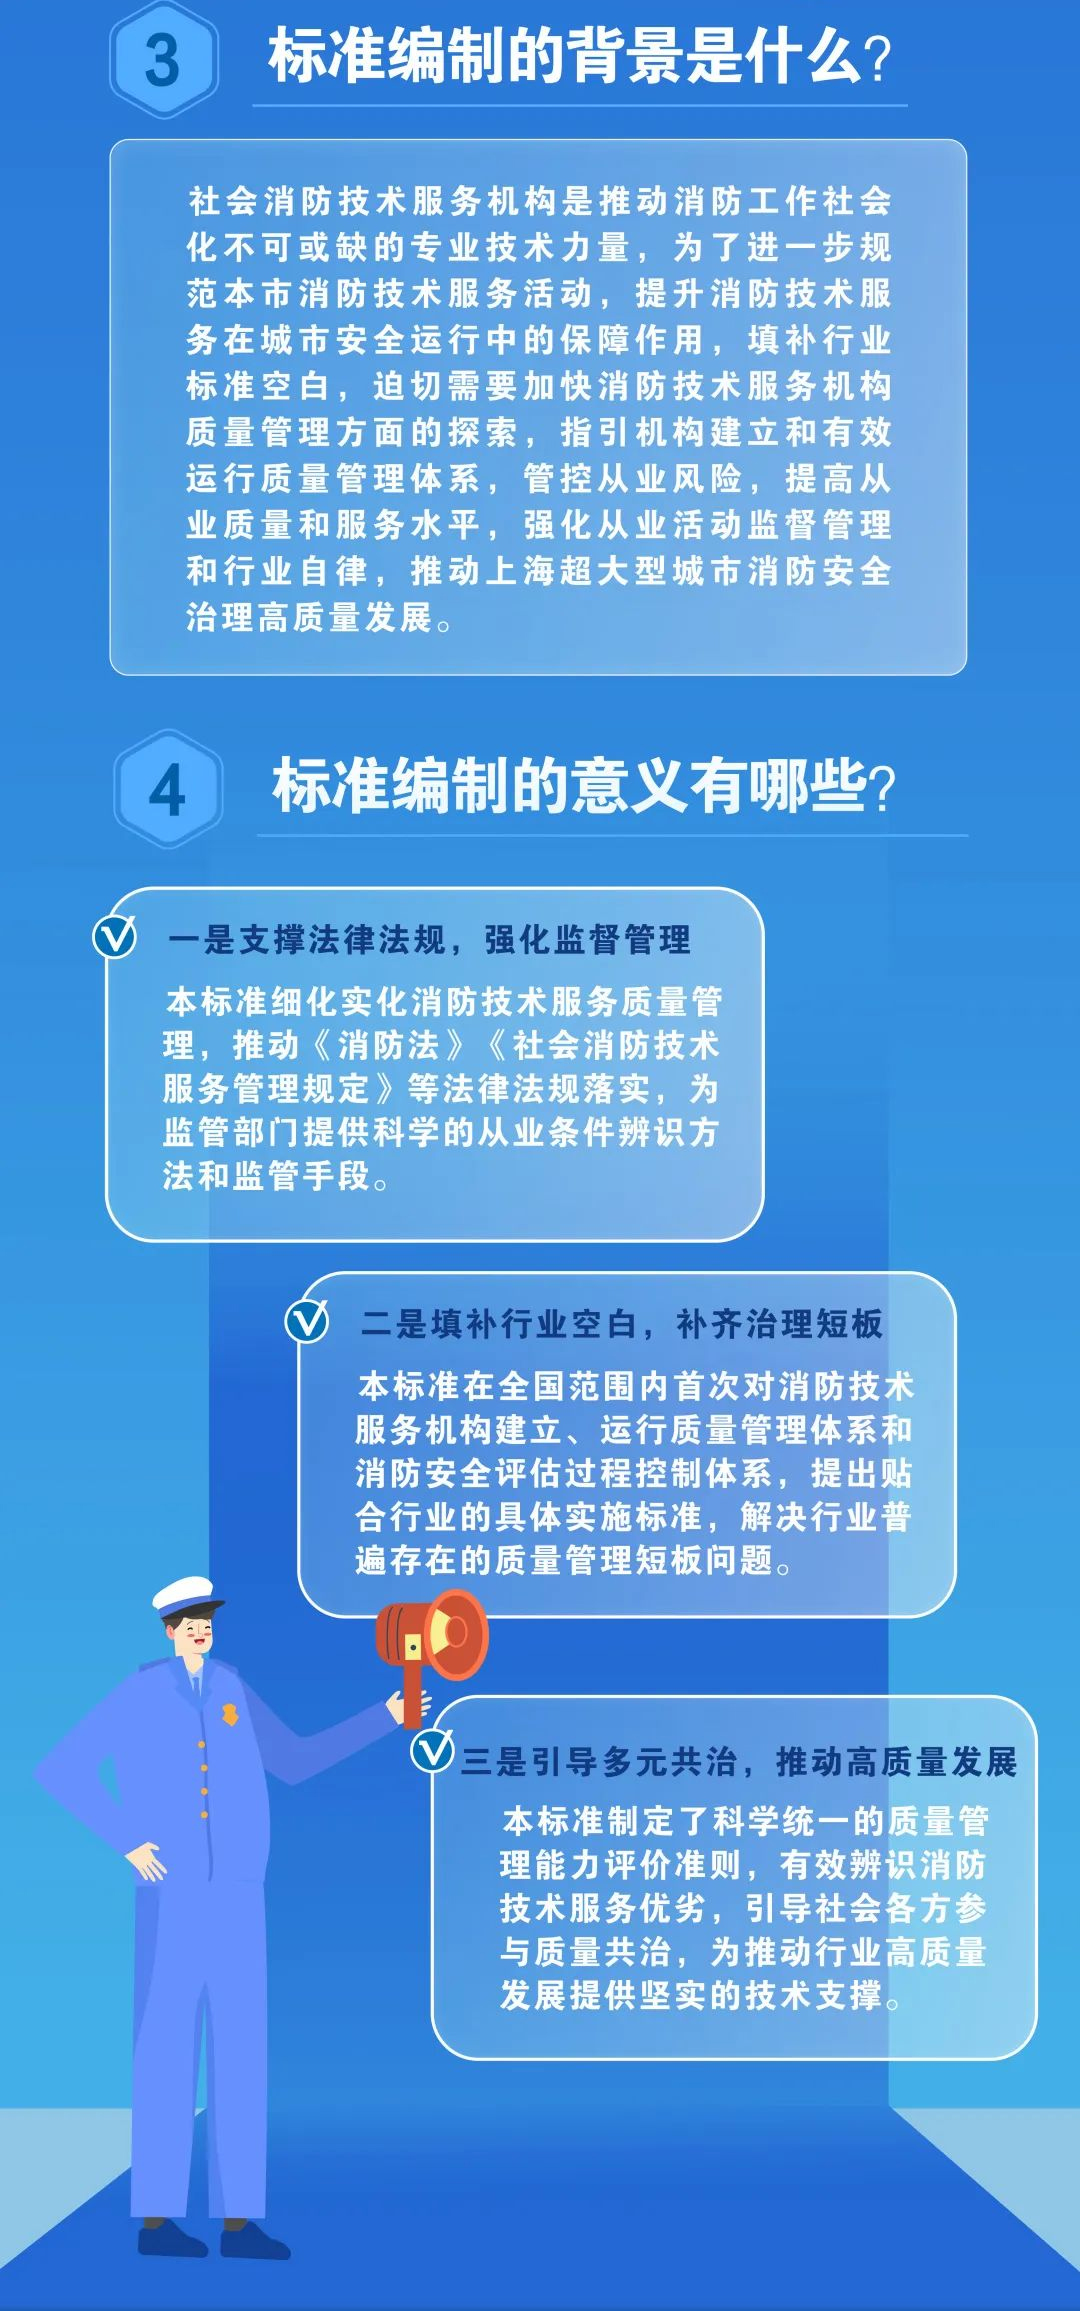 上海地标《社会消防技术服务机构质量管理要求》